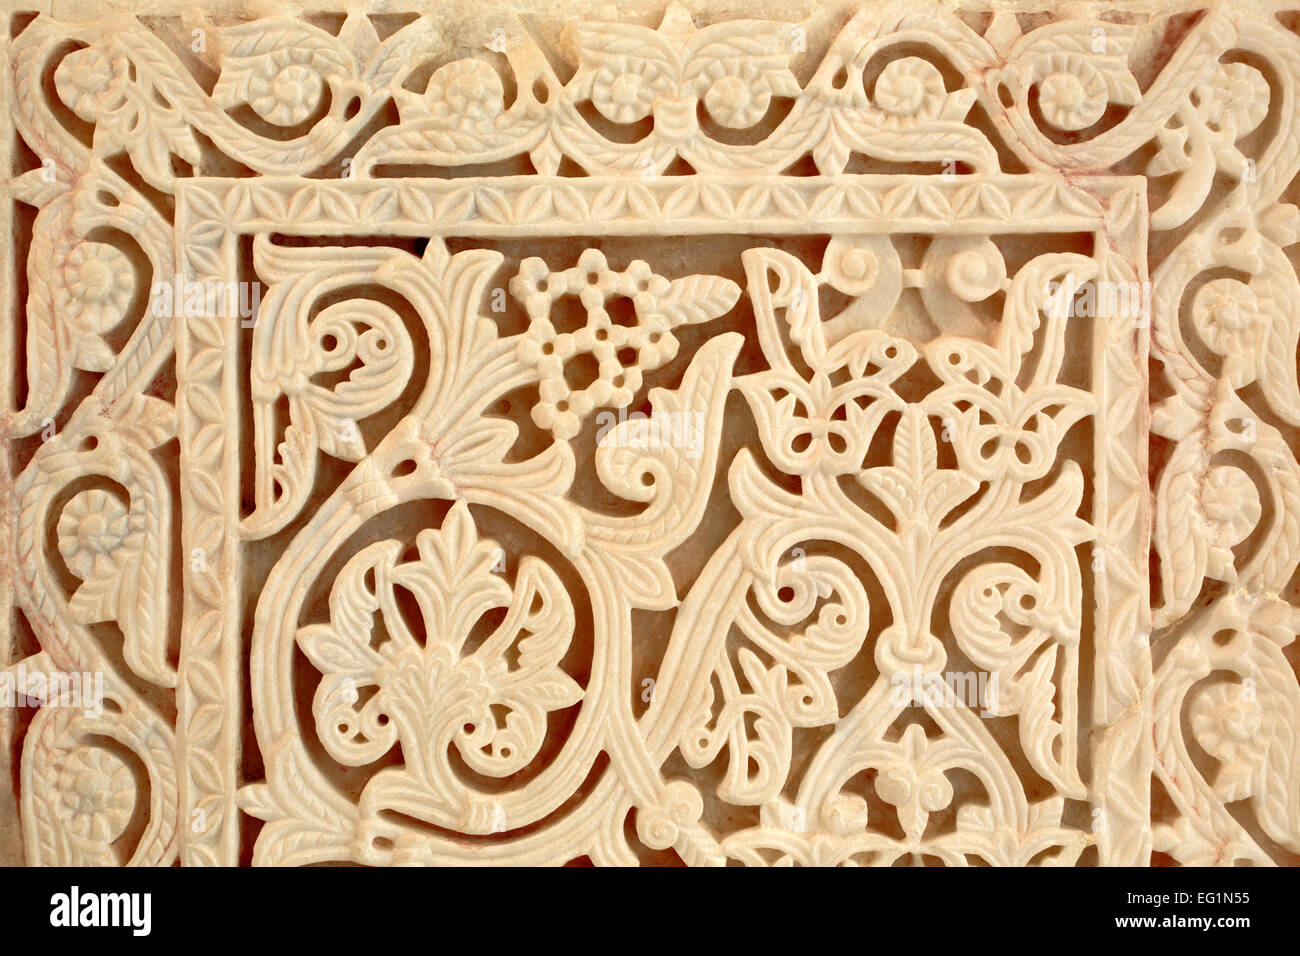 L'art de la sculpture sur pierre, arabesque, musée d'archéologie, Medina Azahara, Cordoue, Andalousie, Espagne Banque D'Images